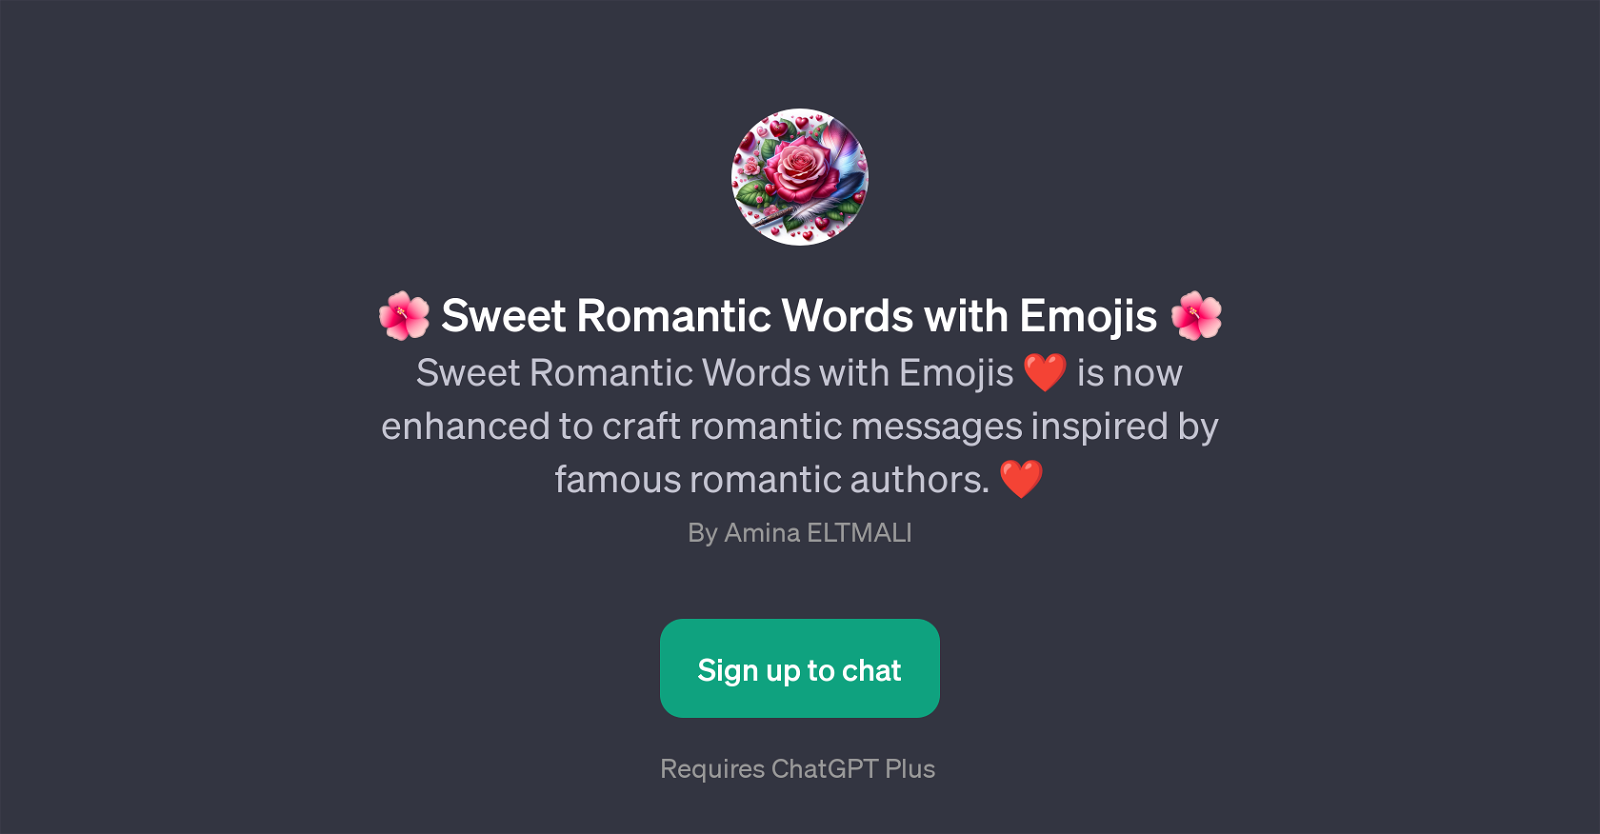 Sweet Romantic Words with Emojis website